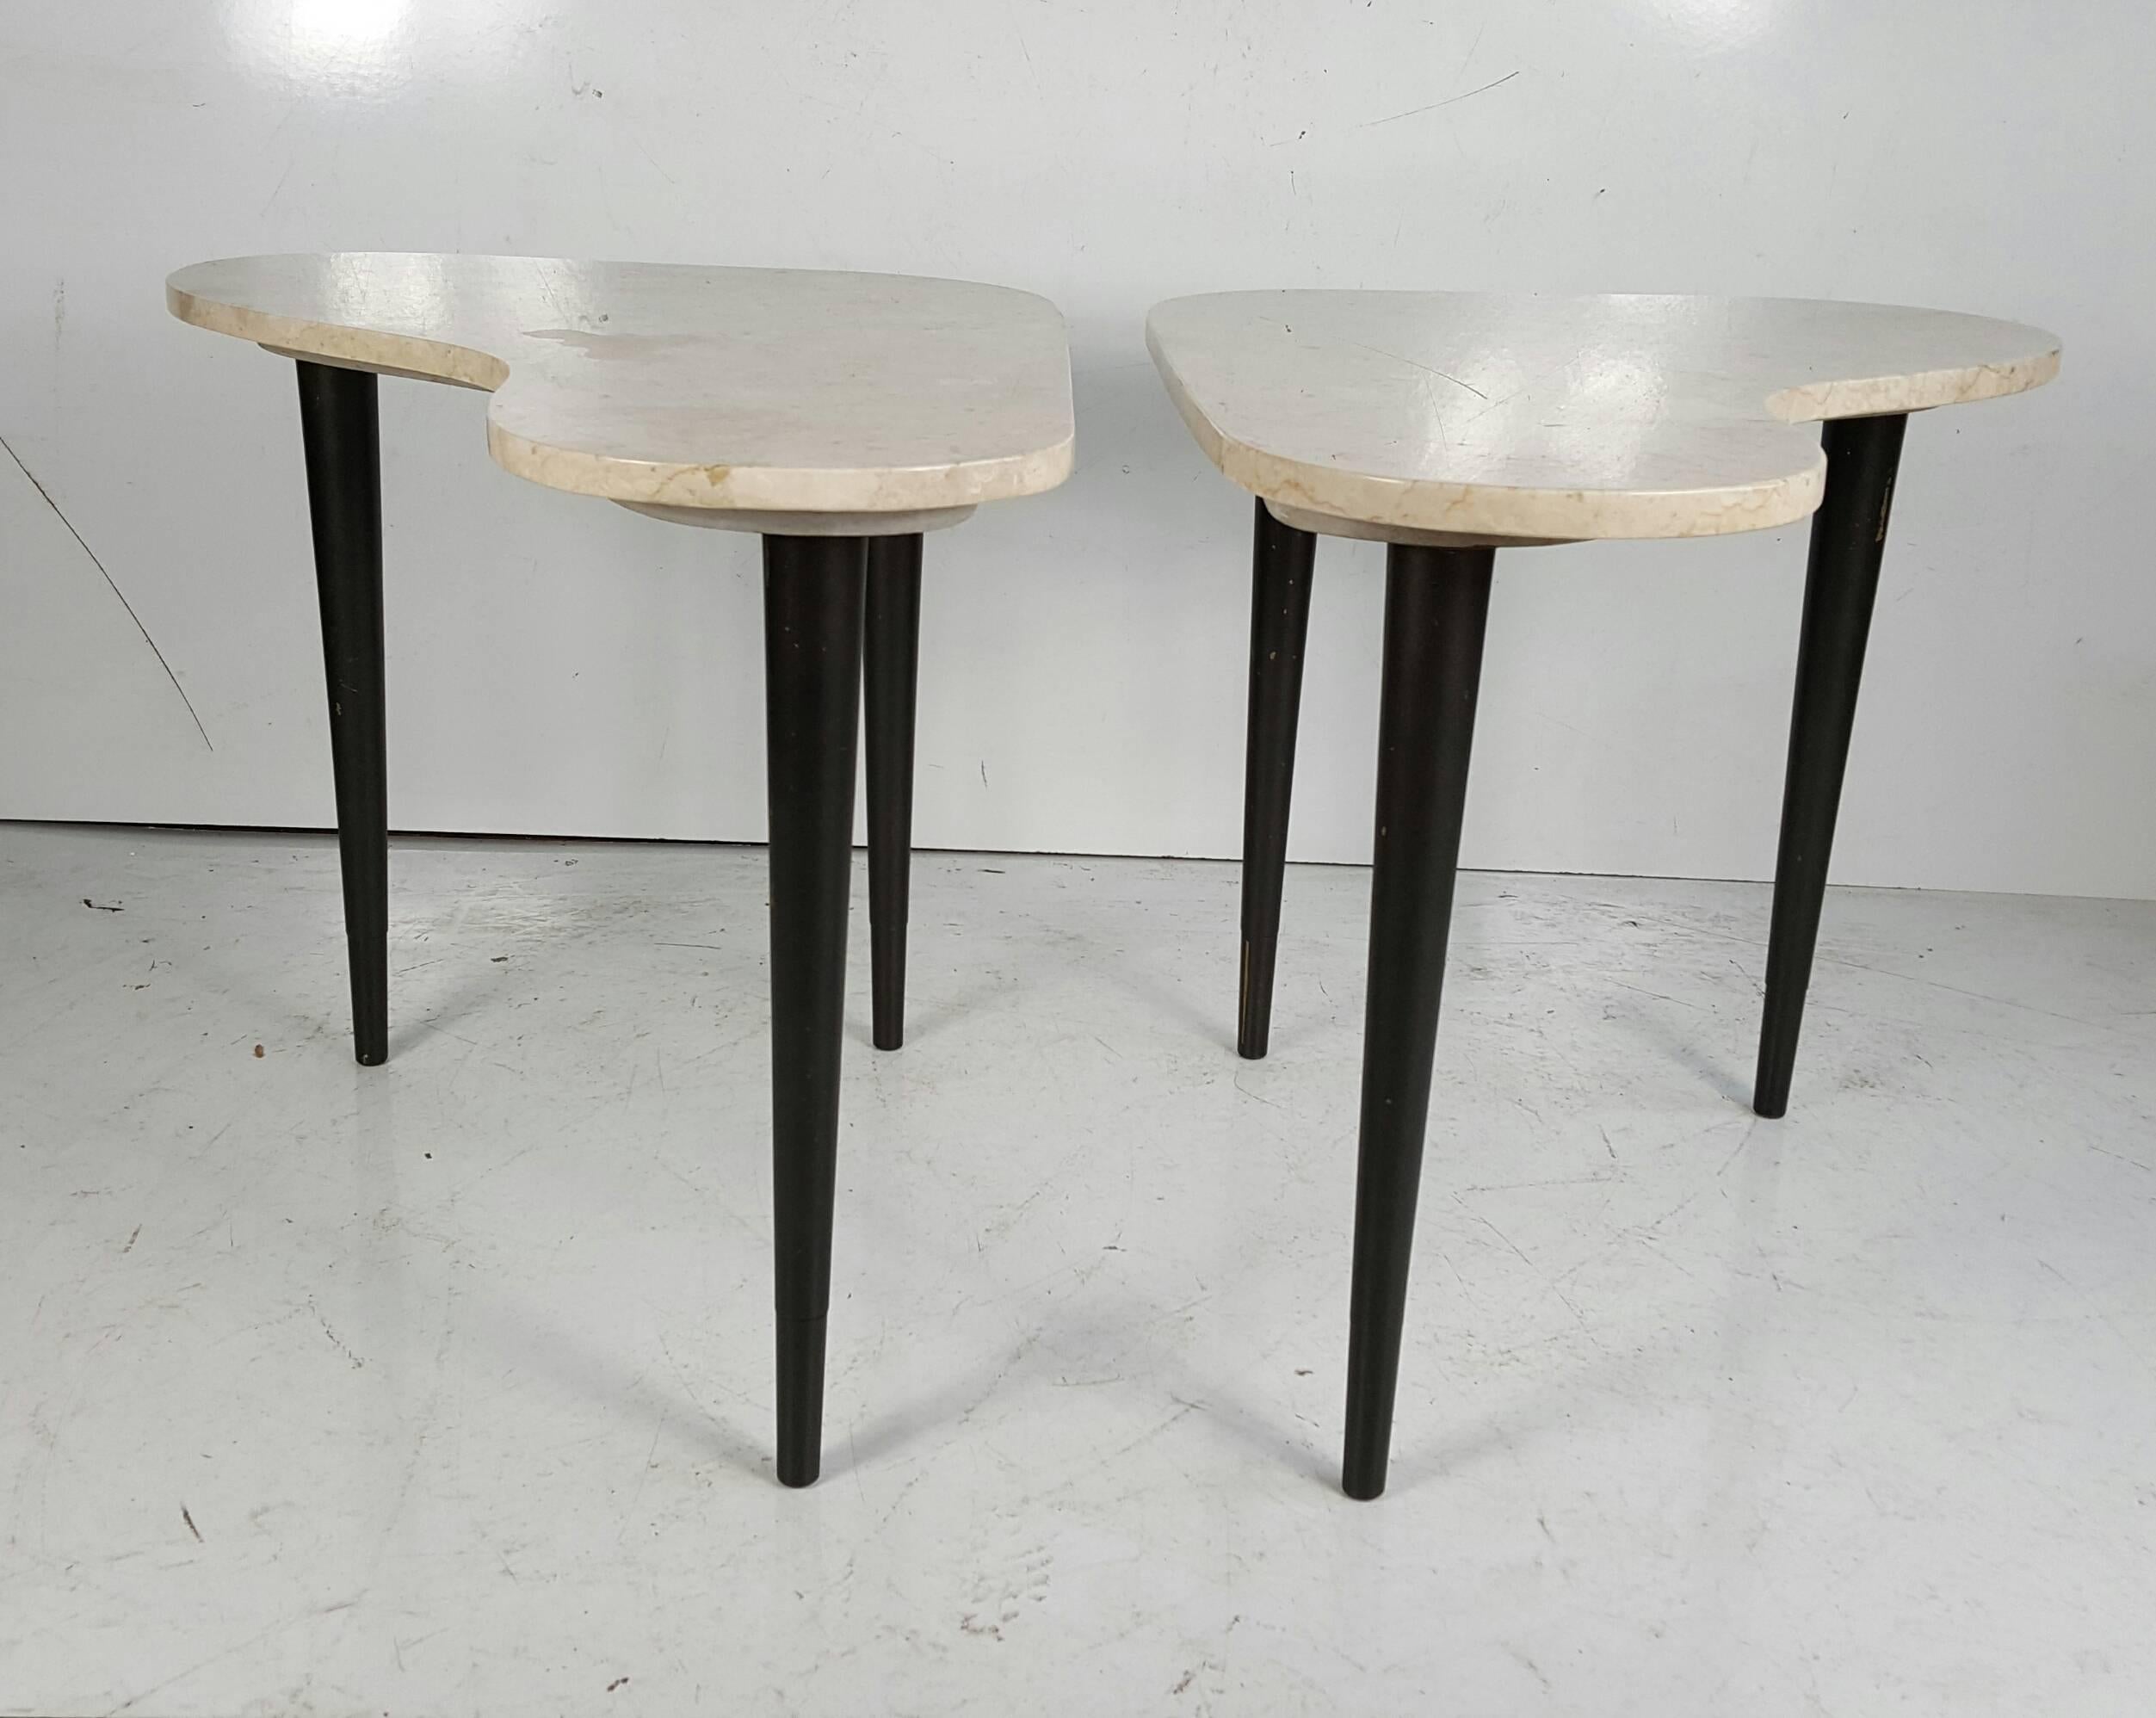 Classic modernist kidney shape italian marble end tables.Simple ,,sleek,,elegant.